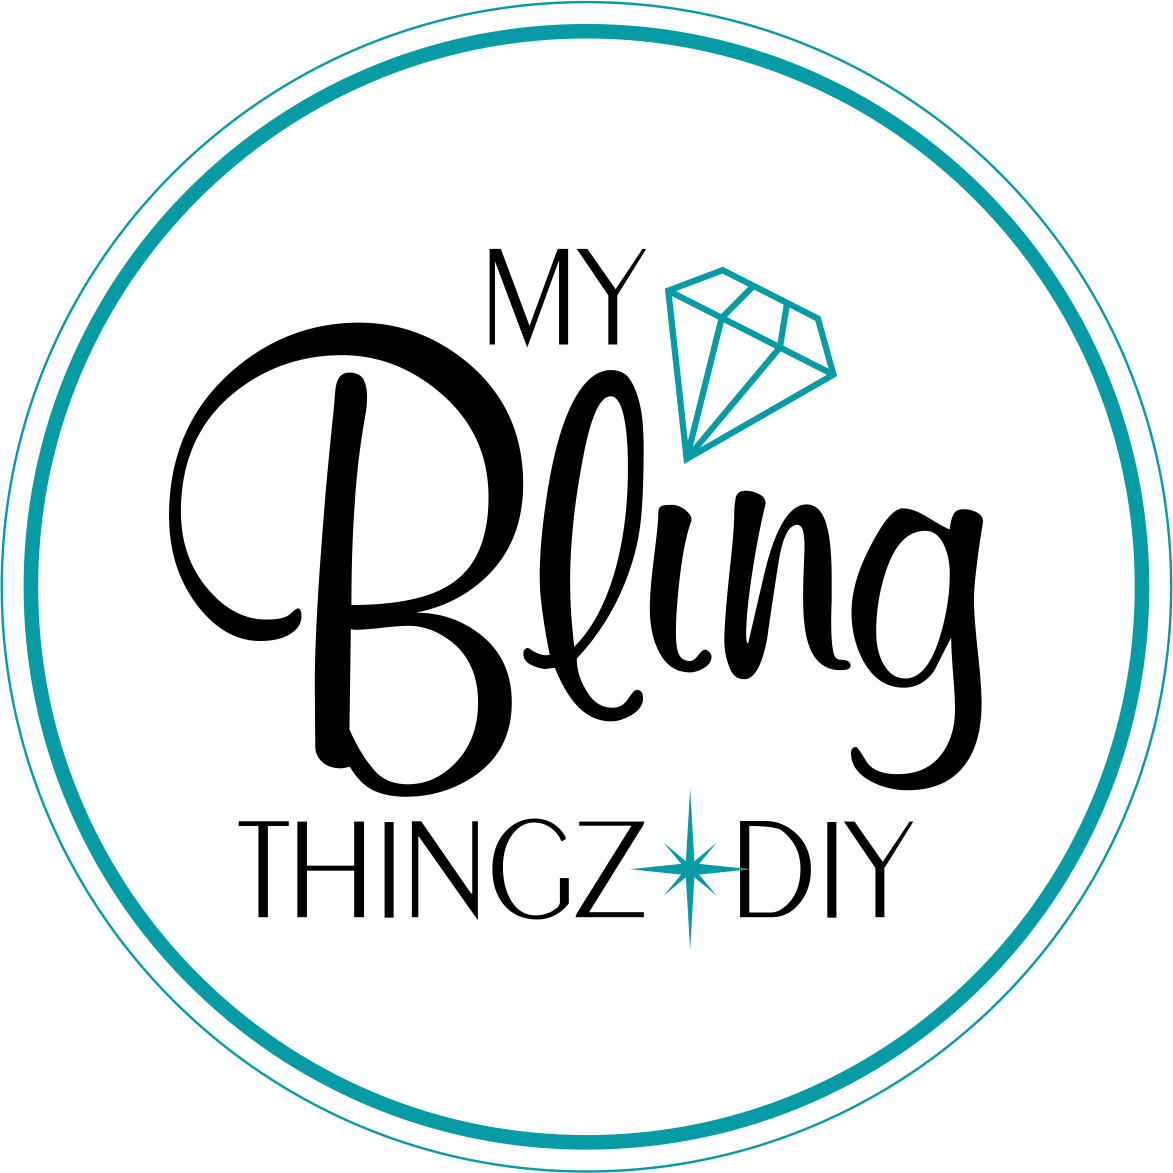 PREORDER Fall Bling Kits – MyBlingThingz DIY